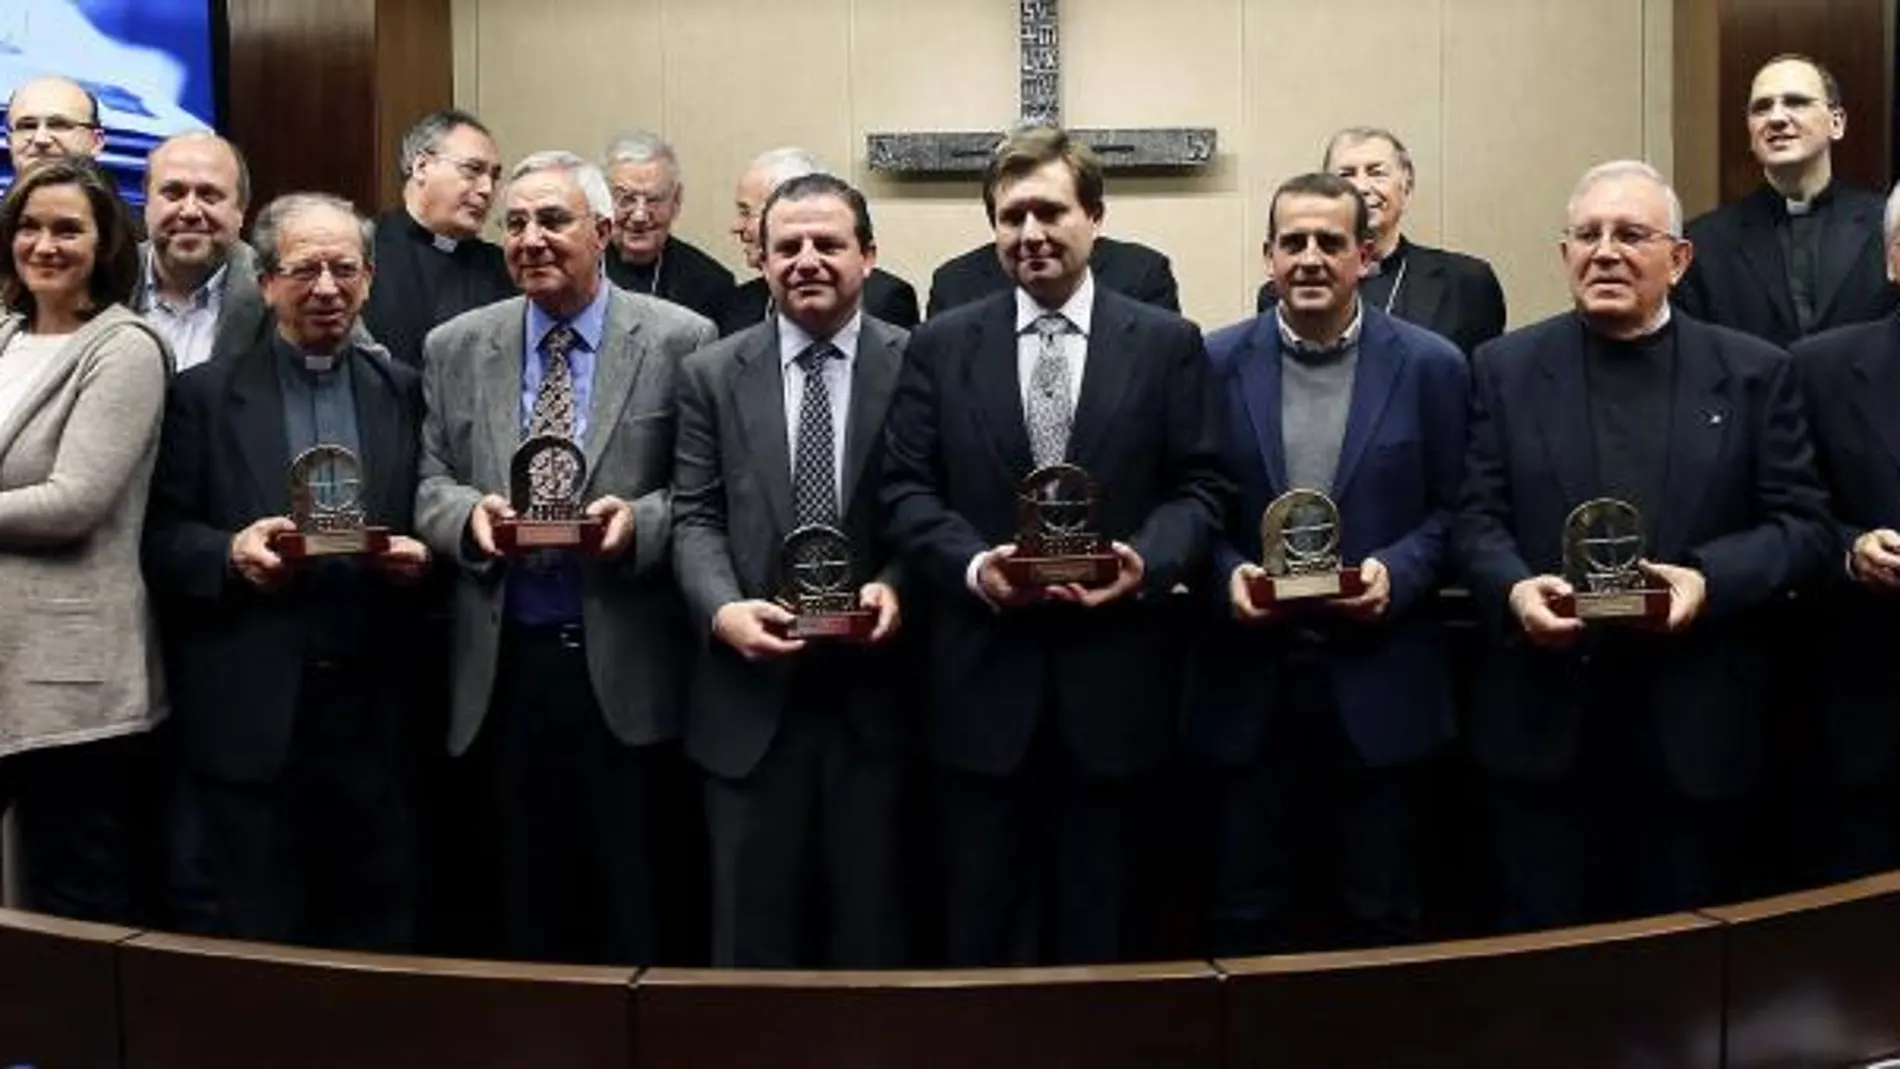 Foto de familia de los galardonados con el 'Premio ¡Bravo! de Prensa' que concede la Conferencia Episcopal